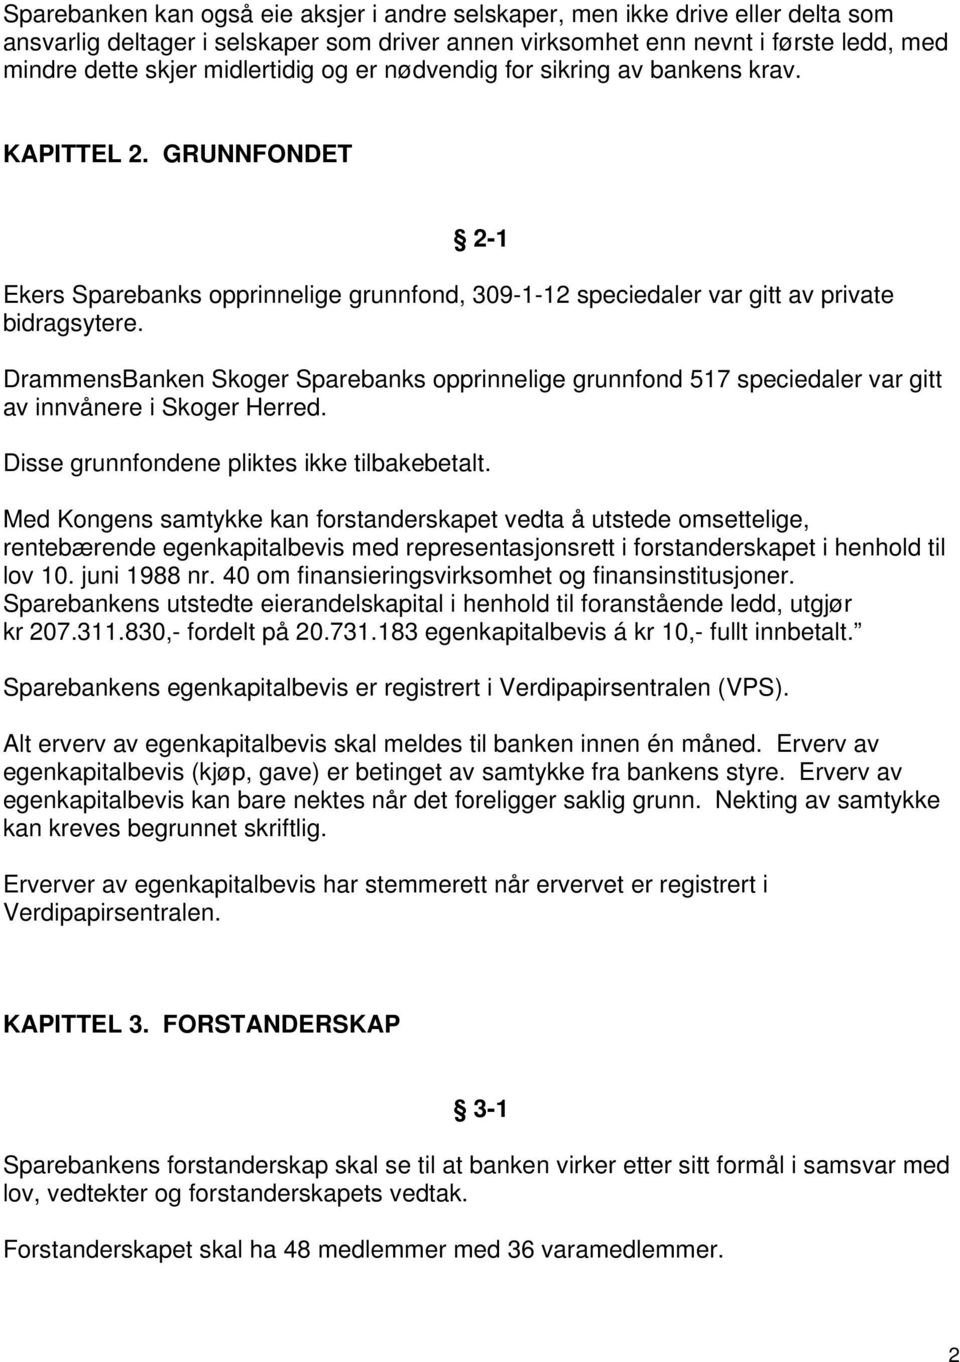 DrammensBanken Skoger Sparebanks opprinnelige grunnfond 517 speciedaler var gitt av innvånere i Skoger Herred. Disse grunnfondene pliktes ikke tilbakebetalt.